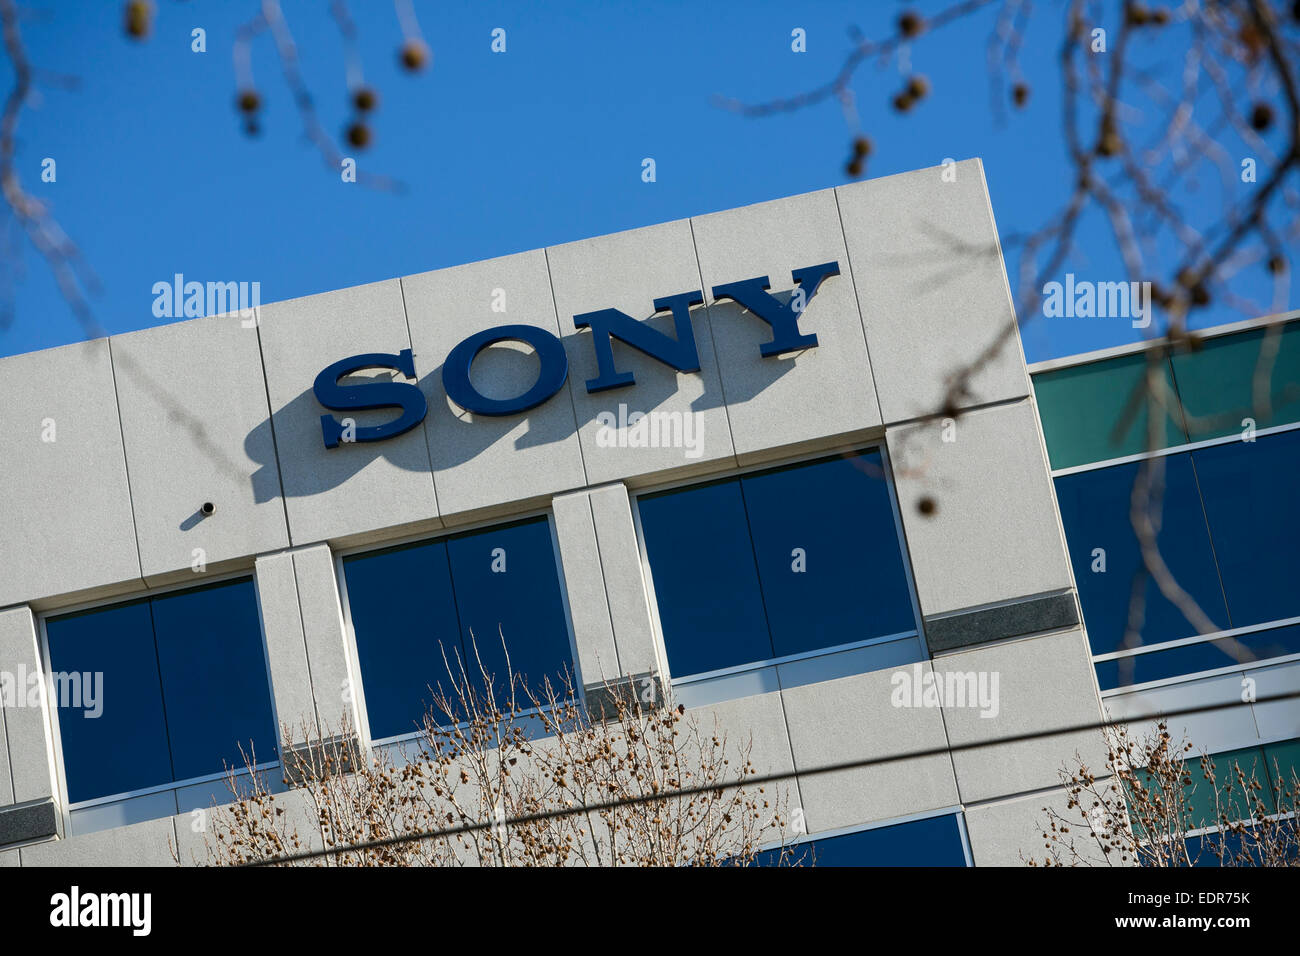 Un immeuble de bureaux occupé par Sony à San Jose, Californie. Banque D'Images